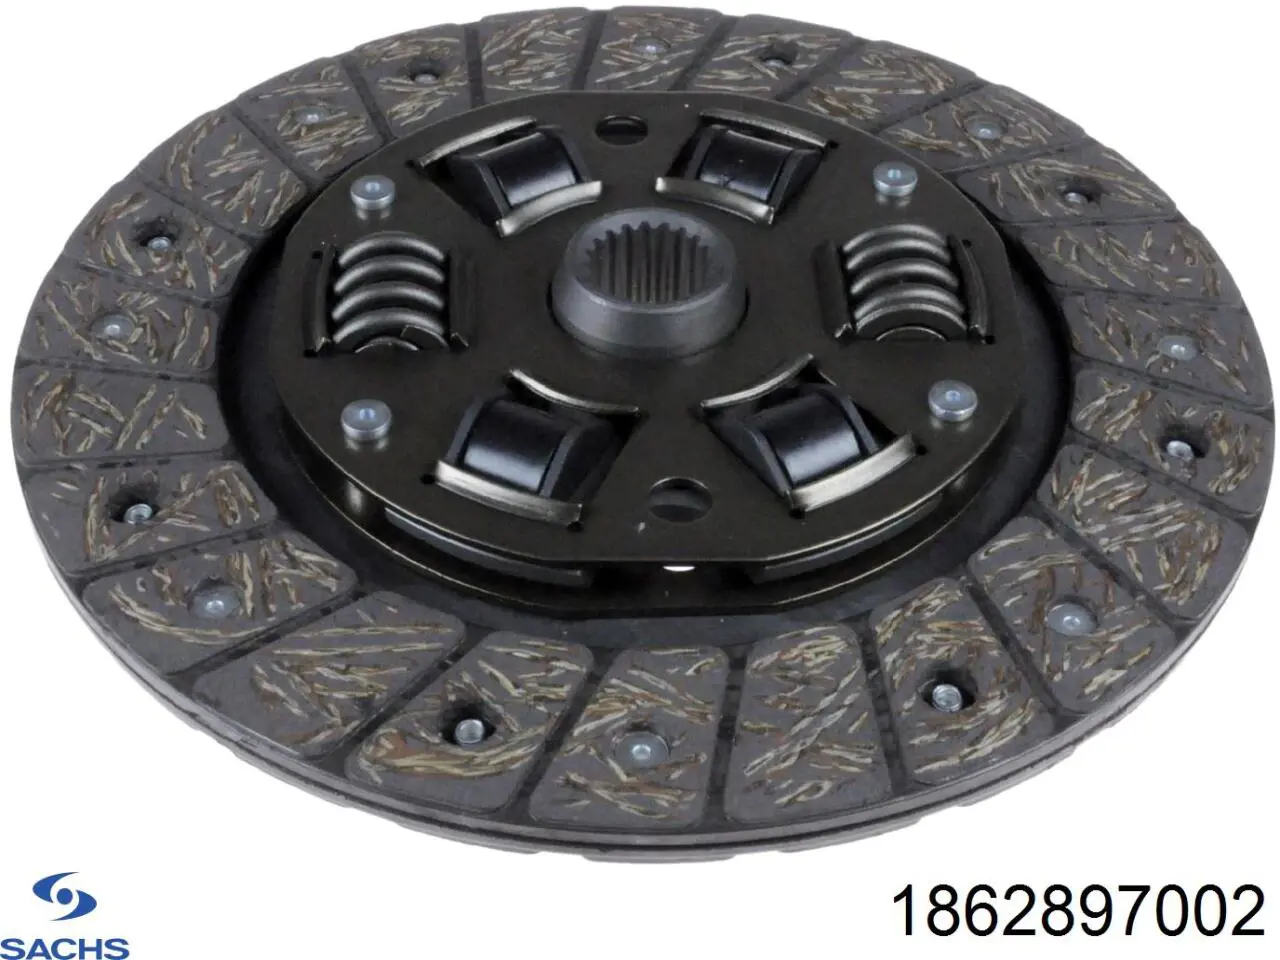 1862 897 002 Sachs диск сцепления